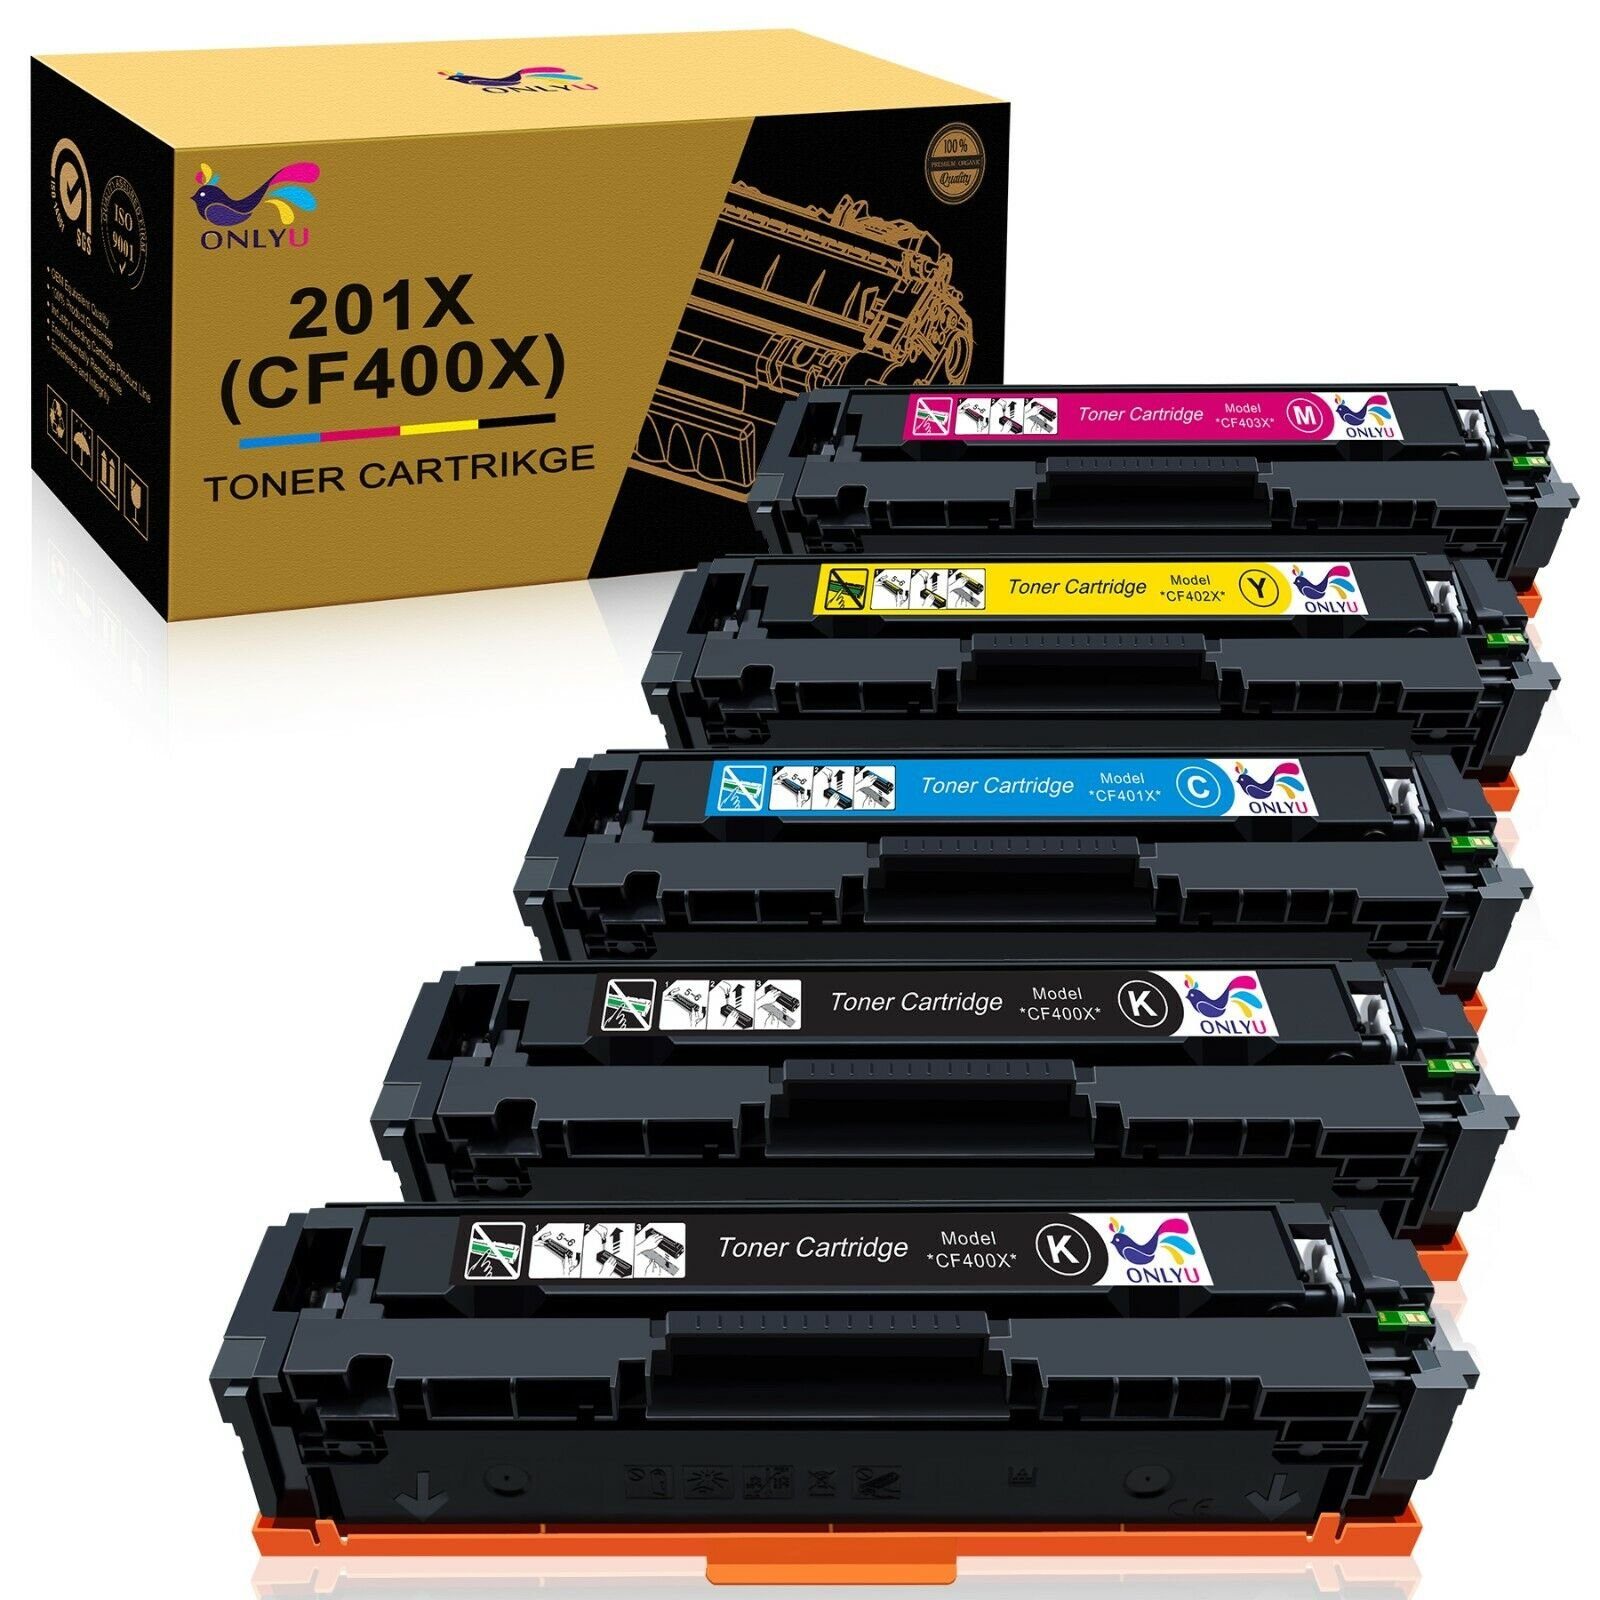 ONLYU Tonerkartusche 5er-Pack Kompatible für HP 201X CF400X, (Schwarz Cyan Gelb Magenta), Color Laserjet Pro MFP M277dw M277n M274n M277 M252dw M252n